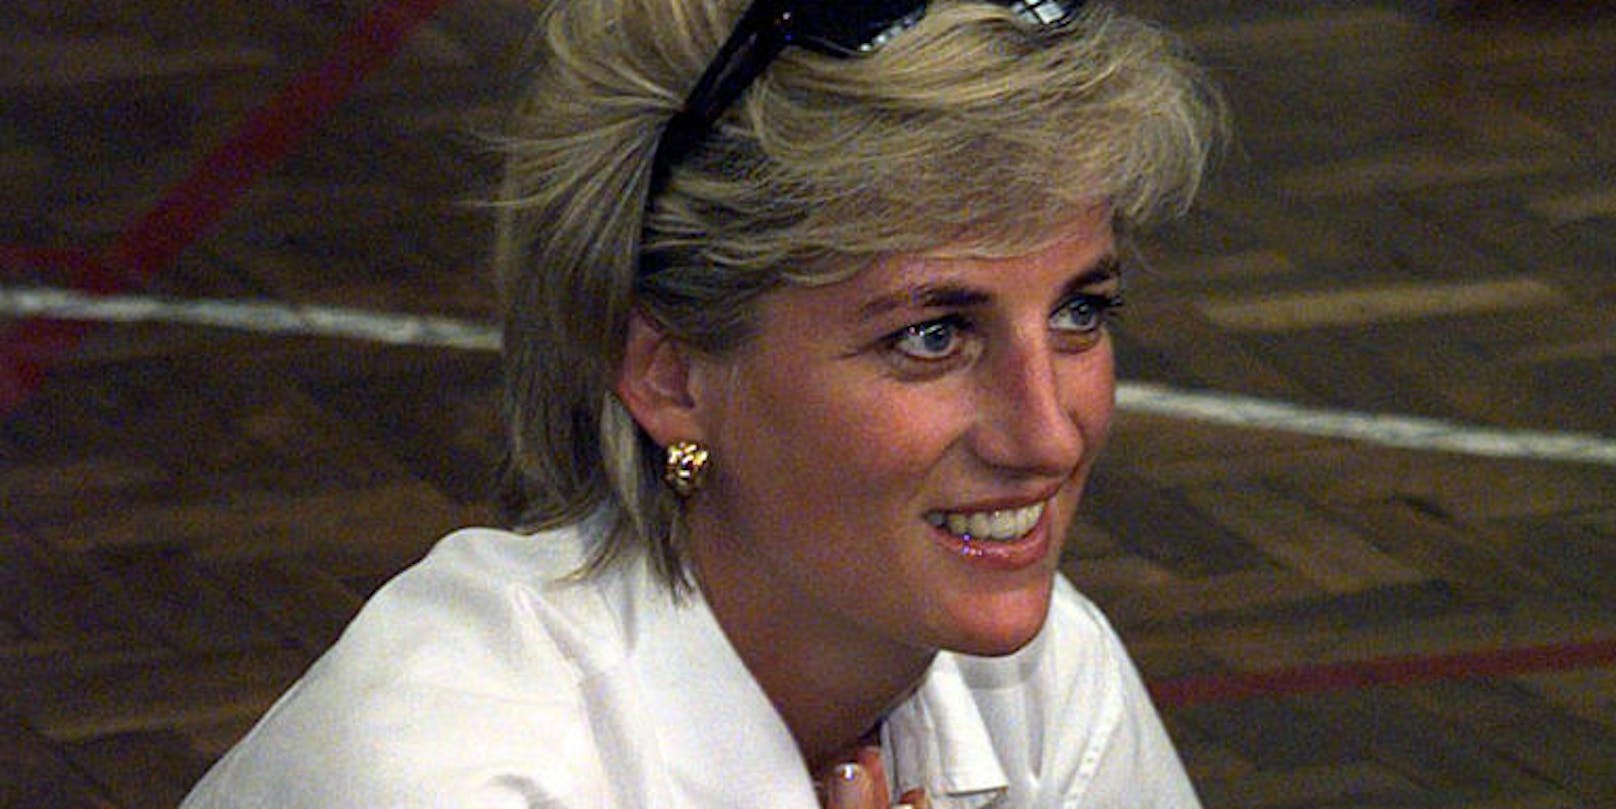 Prinzessin Diana kam am 31. August 1997 bei einem tragischen Autounfall ums Leben.